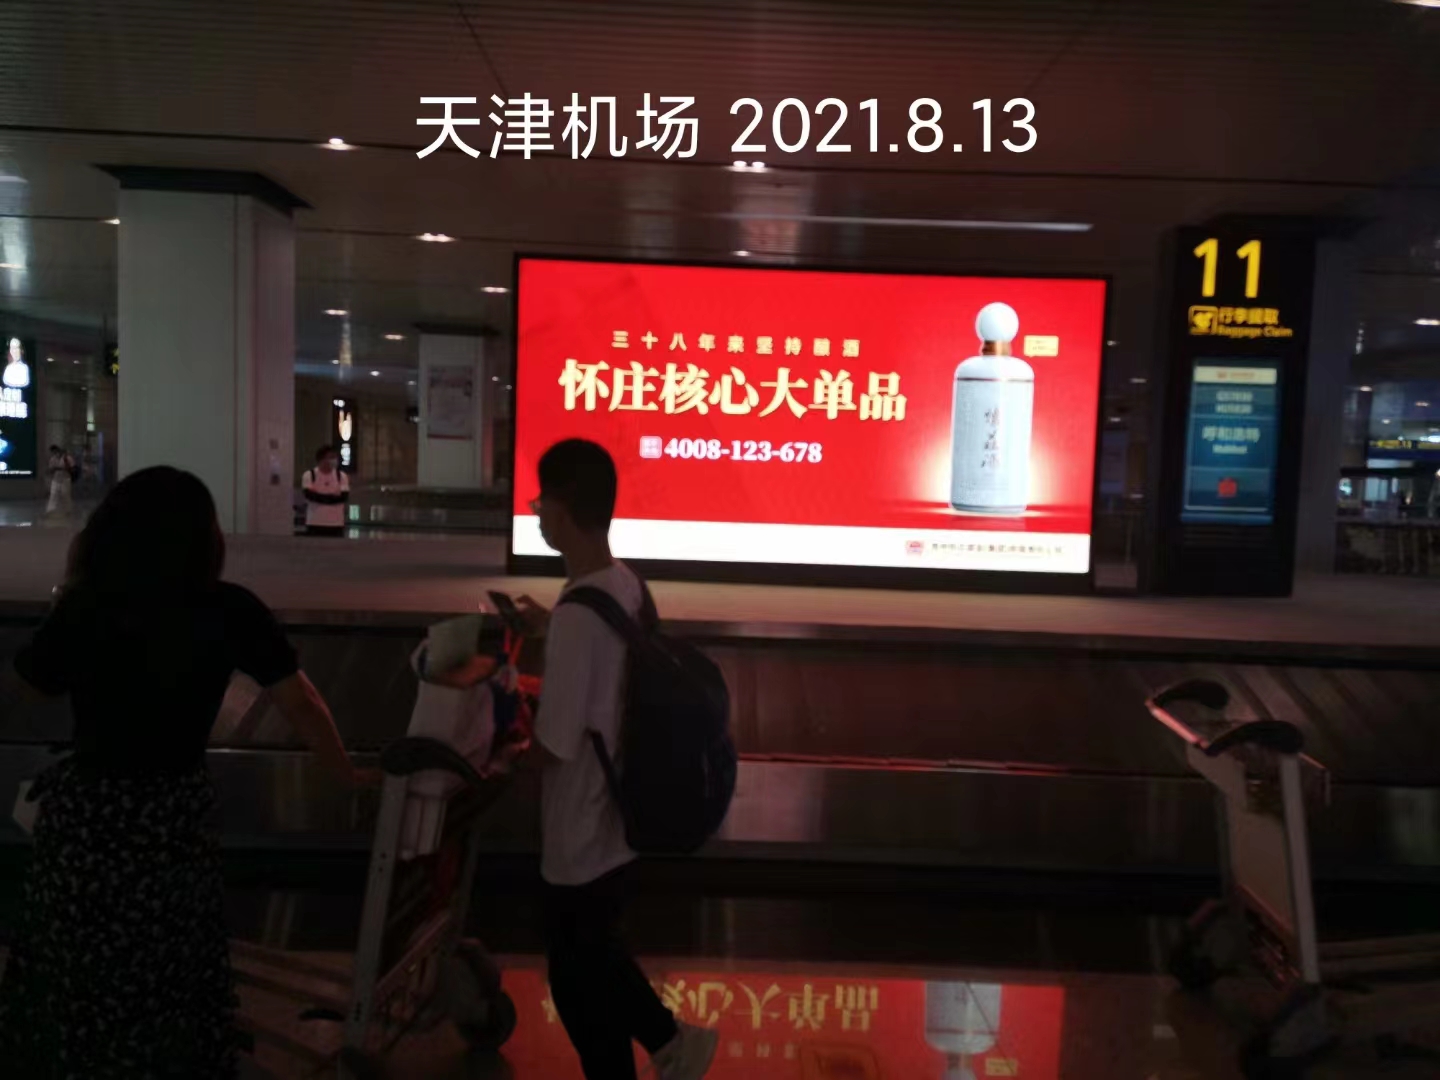 天津机场广告